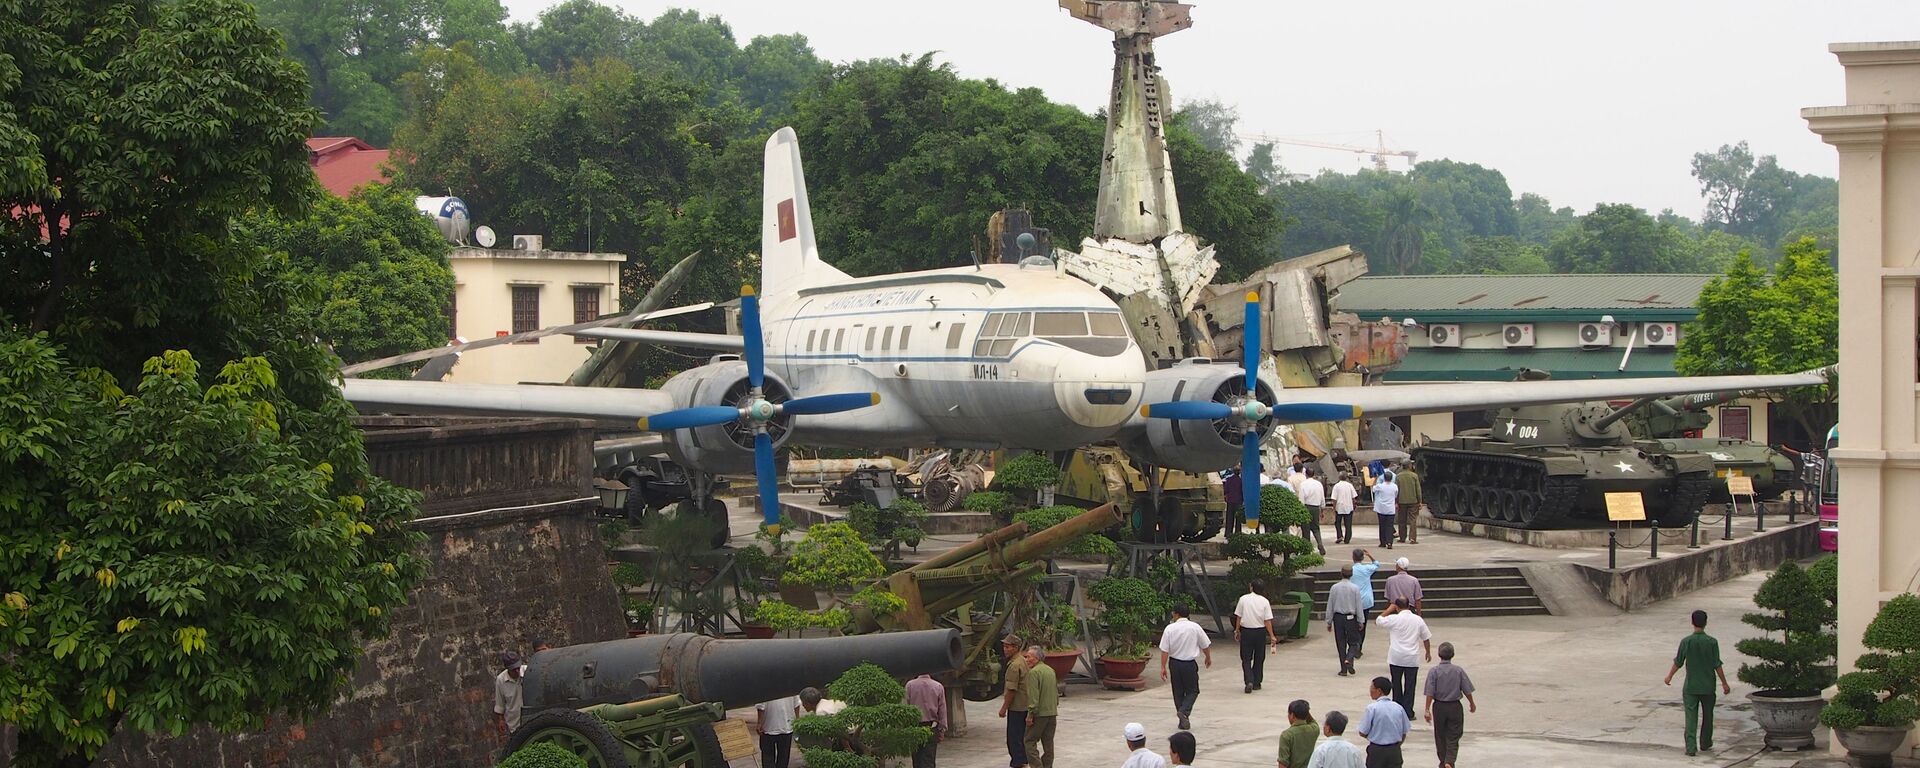 Máy bay vận tải quân sự Il-14 tại Bảo tàng Lịch sử Quân sự Việt Nam - Sputnik Việt Nam, 1920, 05.04.2020